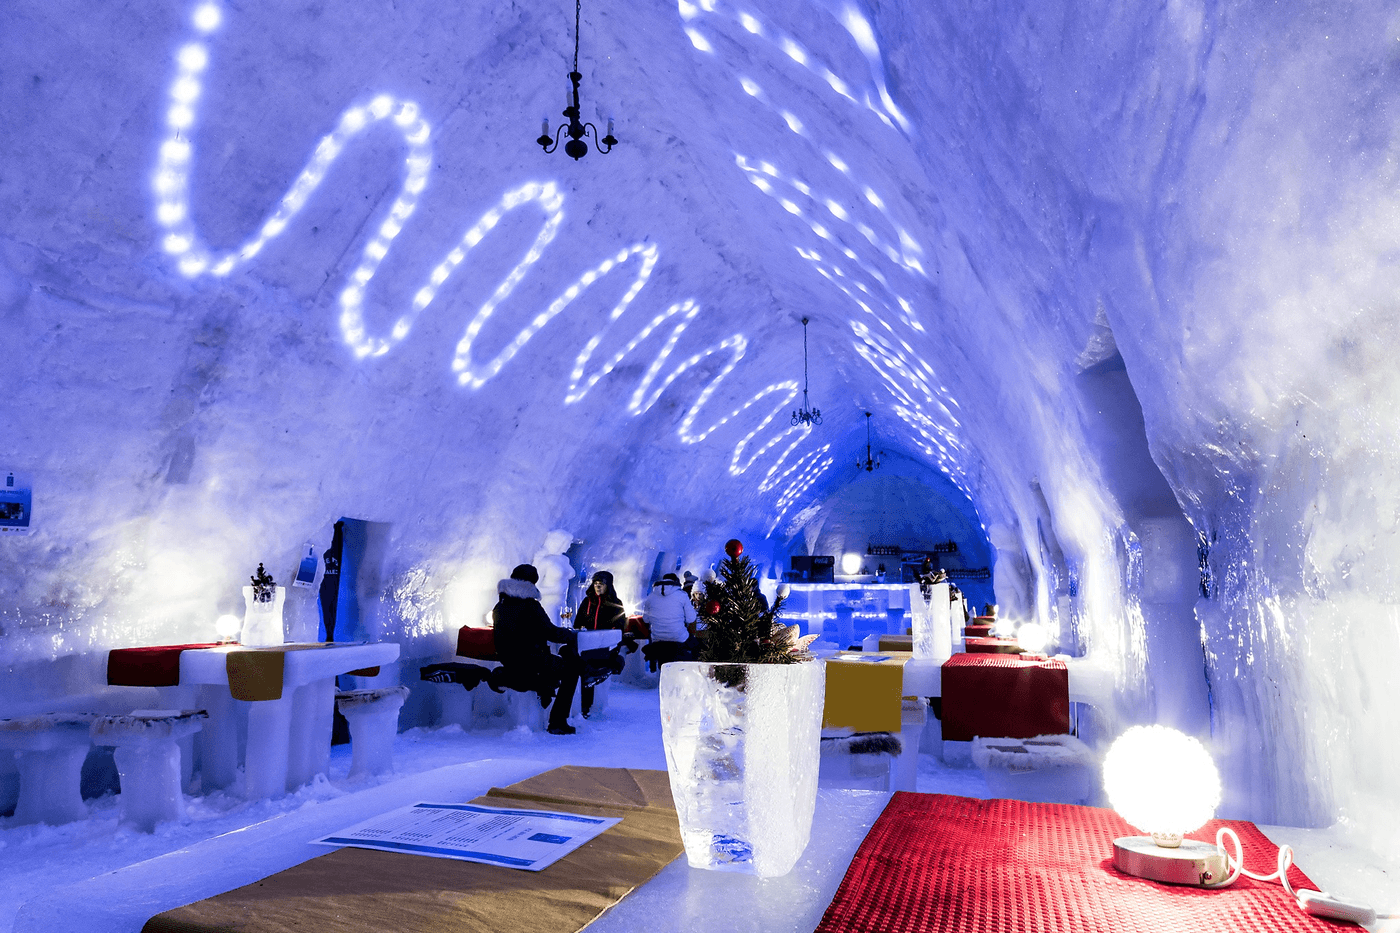  Hotelul de Gheaţă de la Bâlea Lac, promovat într-un top mondial al atracţiilor turistice de iarnă